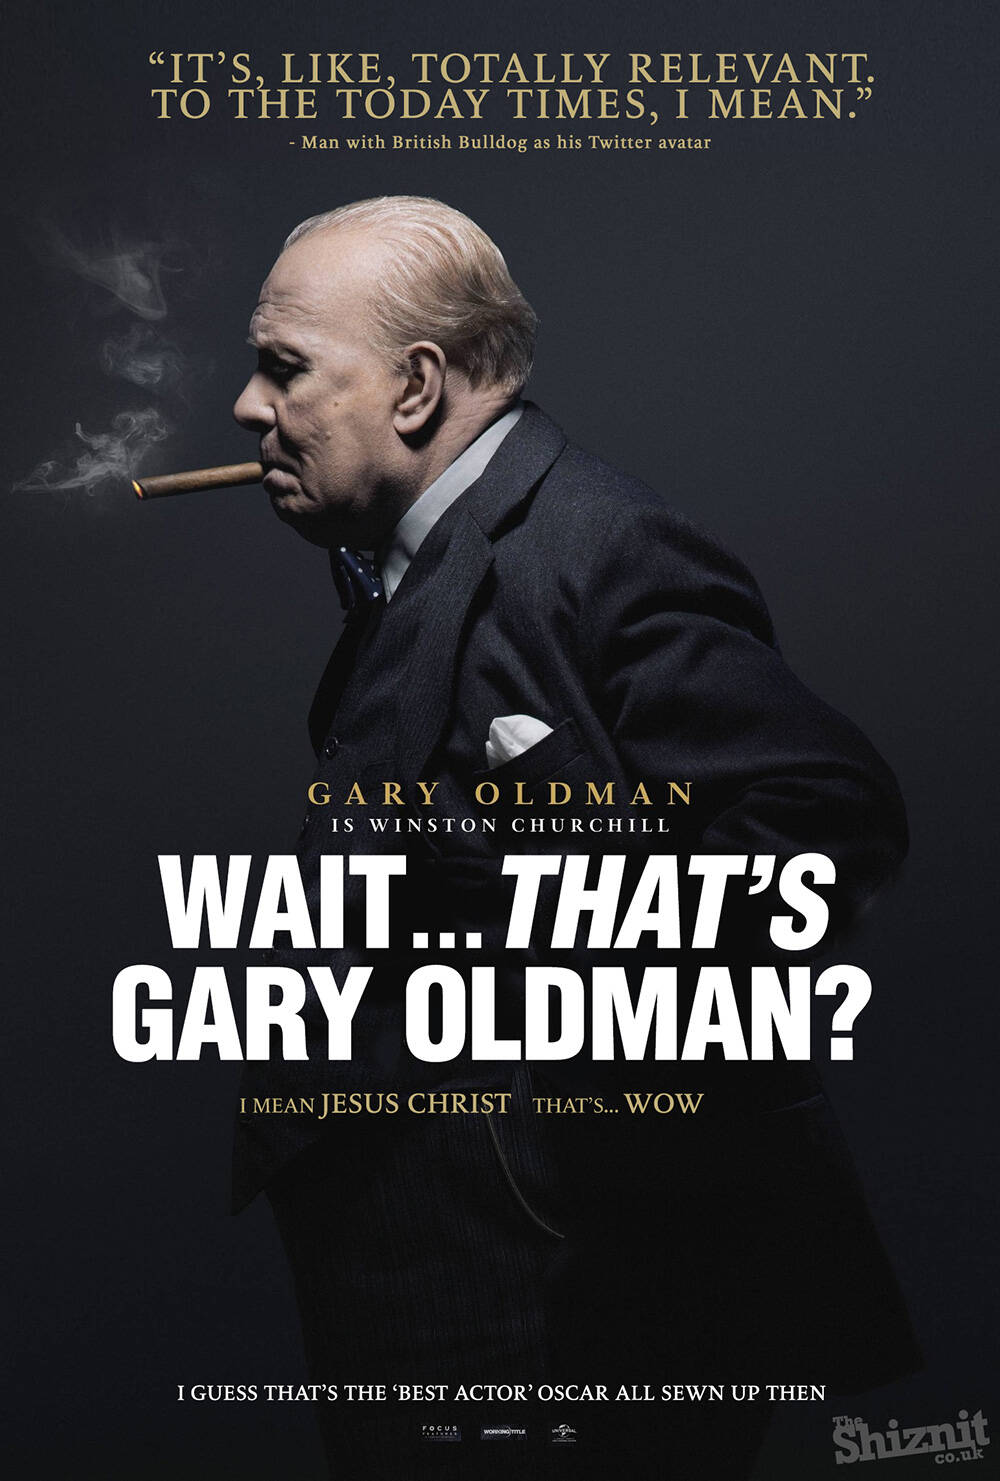 "Espera, esse é o Garry Oldman? Quer dizer, Jesus Cristo, wow". Foto: Divulgação